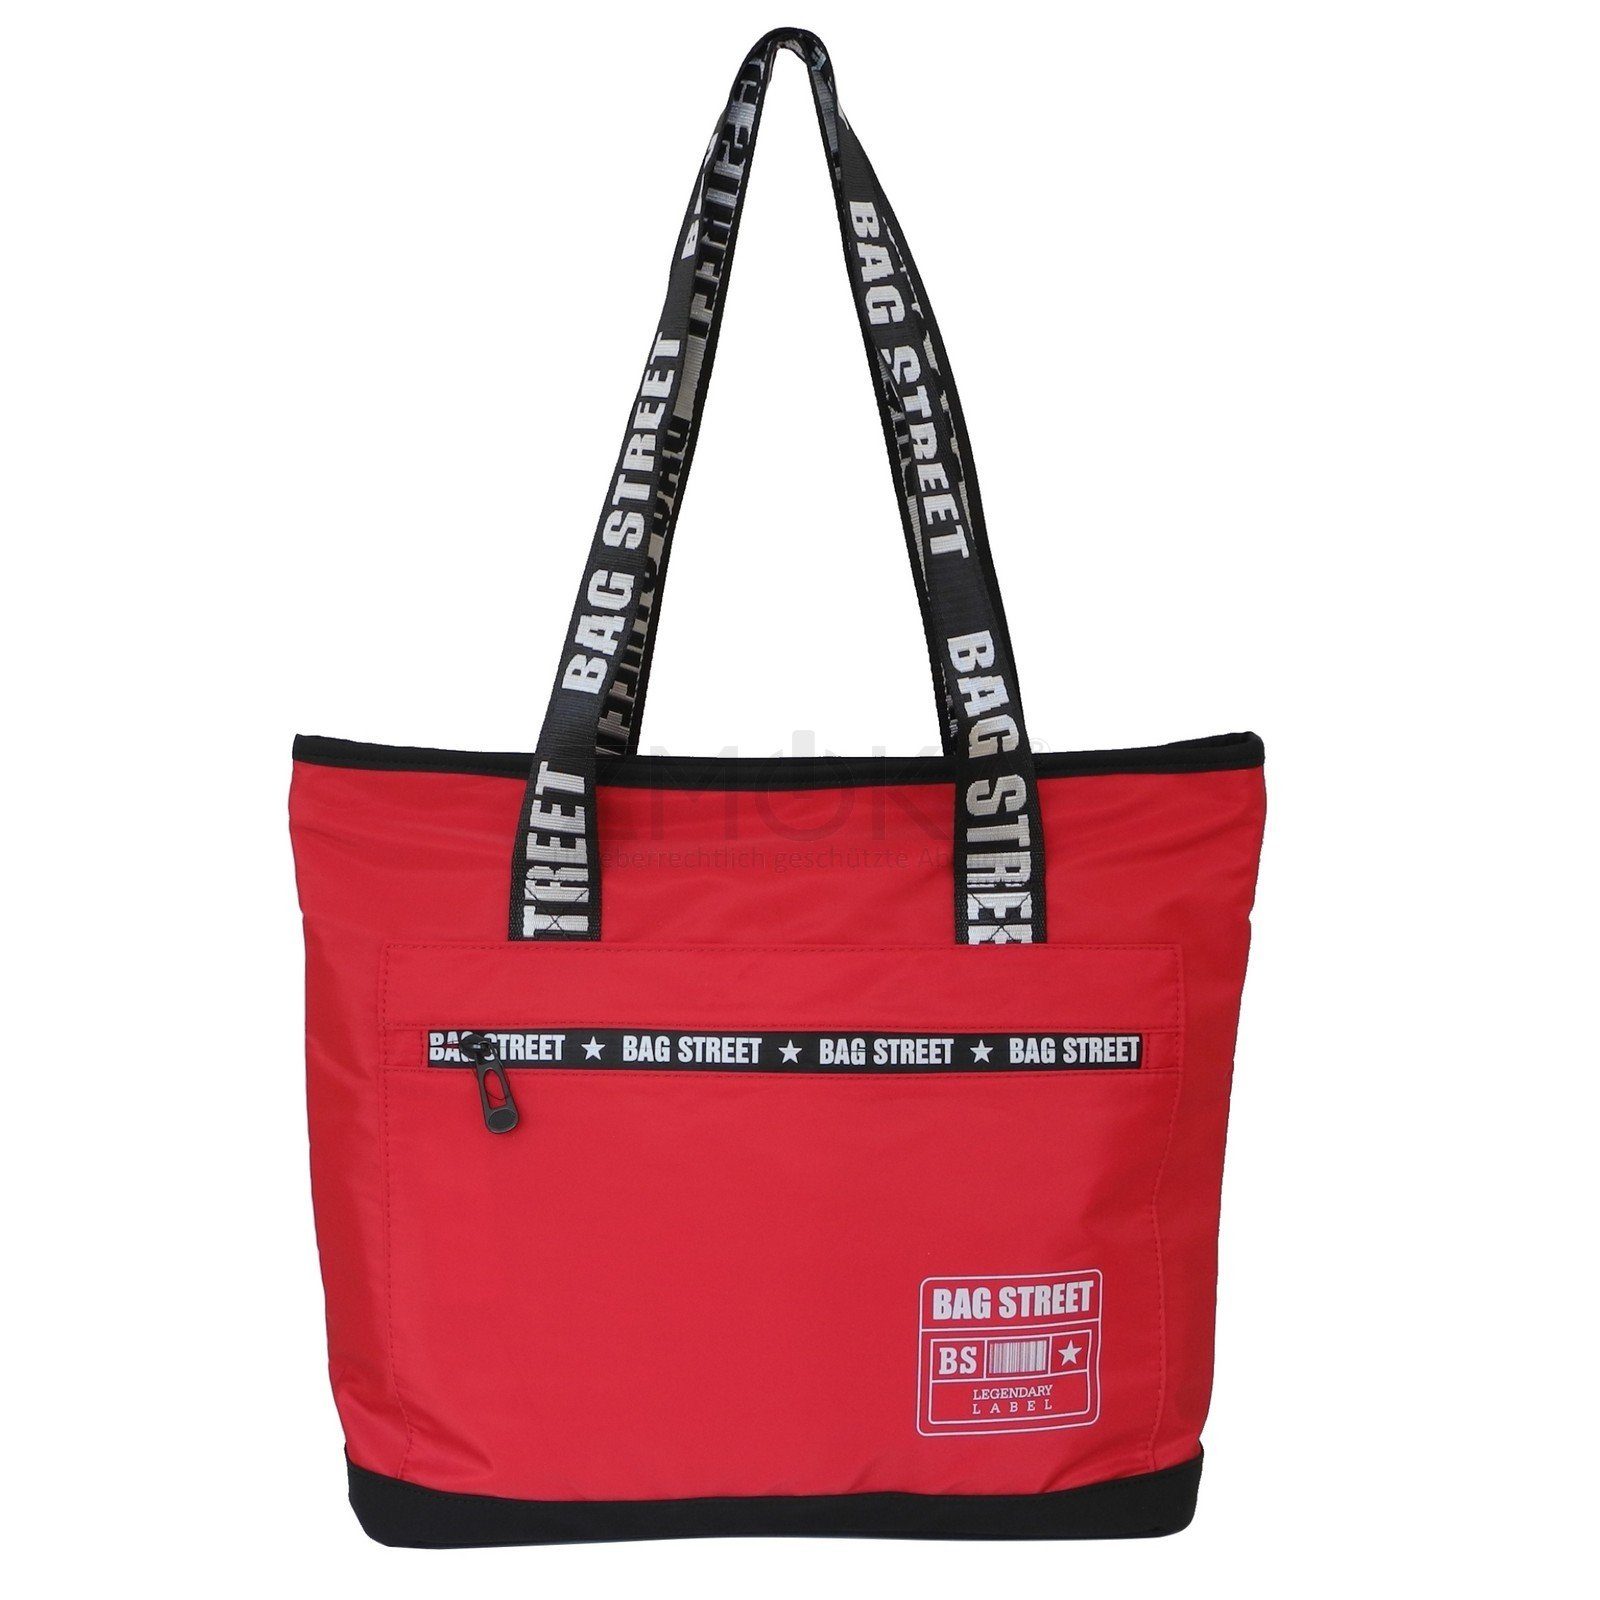 BAG STREET Handtasche Bag Street - leichter Damen Shopper Schultertasche Handtasche Auswahl Rot